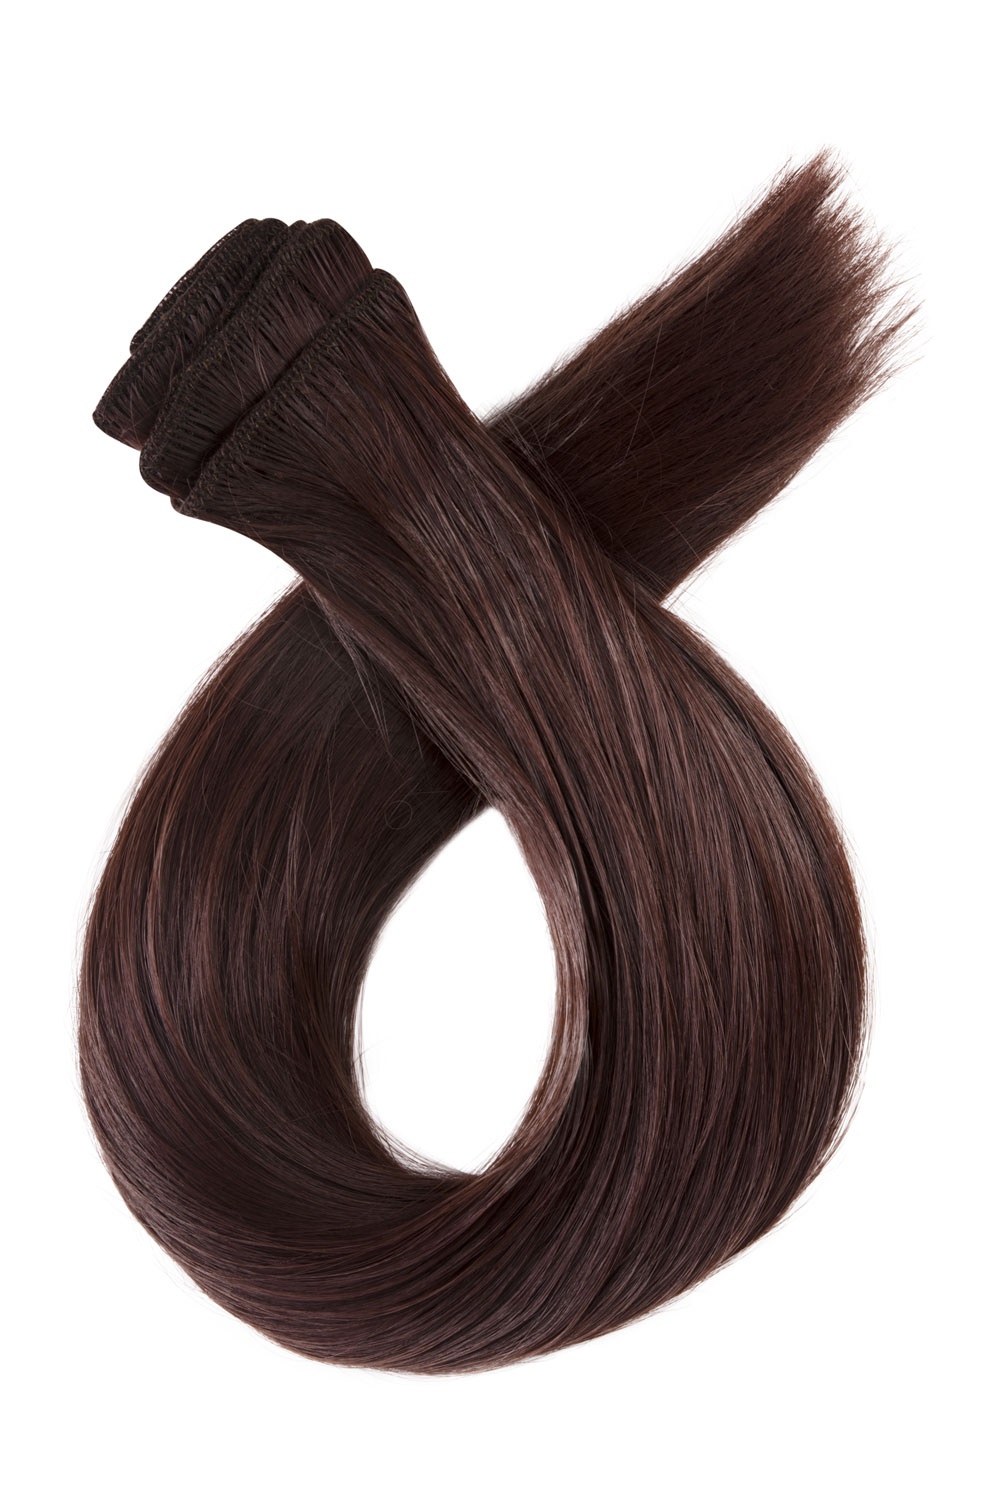 Tmavé červenohnedé clip in vlasy, 60cm, 150g, farba 33